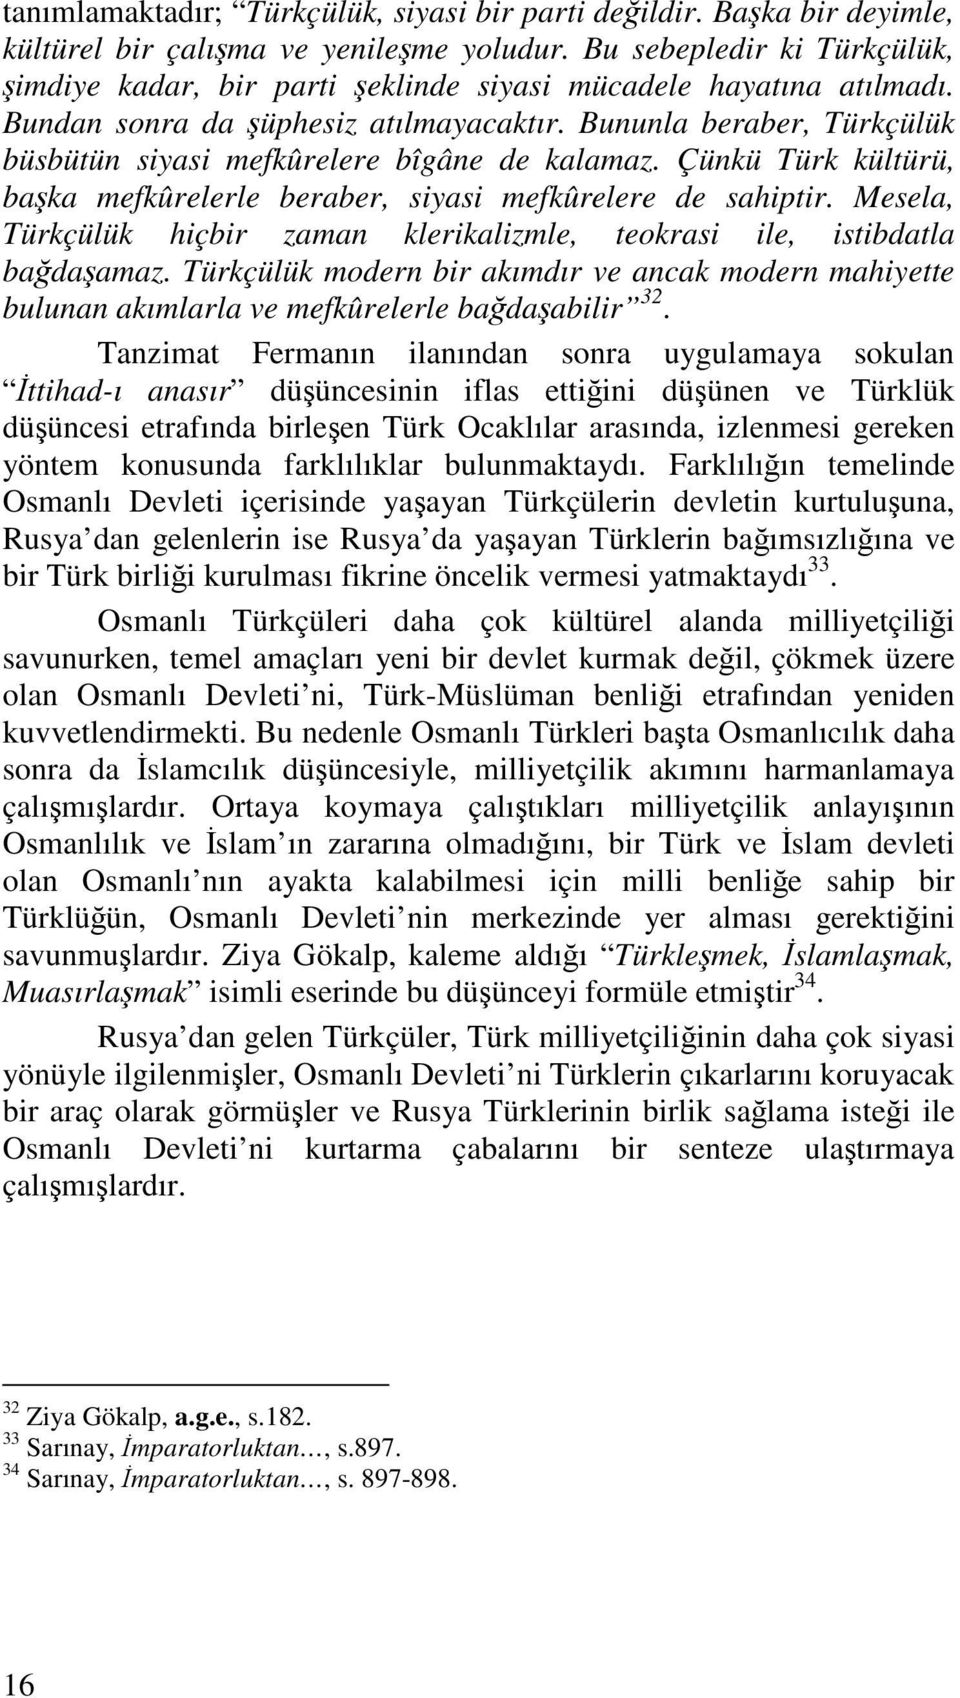 Bununla beraber, Türkçülük büsbütün siyasi mefkûrelere bîgâne de kalamaz. Çünkü Türk kültürü, baka mefkûrelerle beraber, siyasi mefkûrelere de sahiptir.